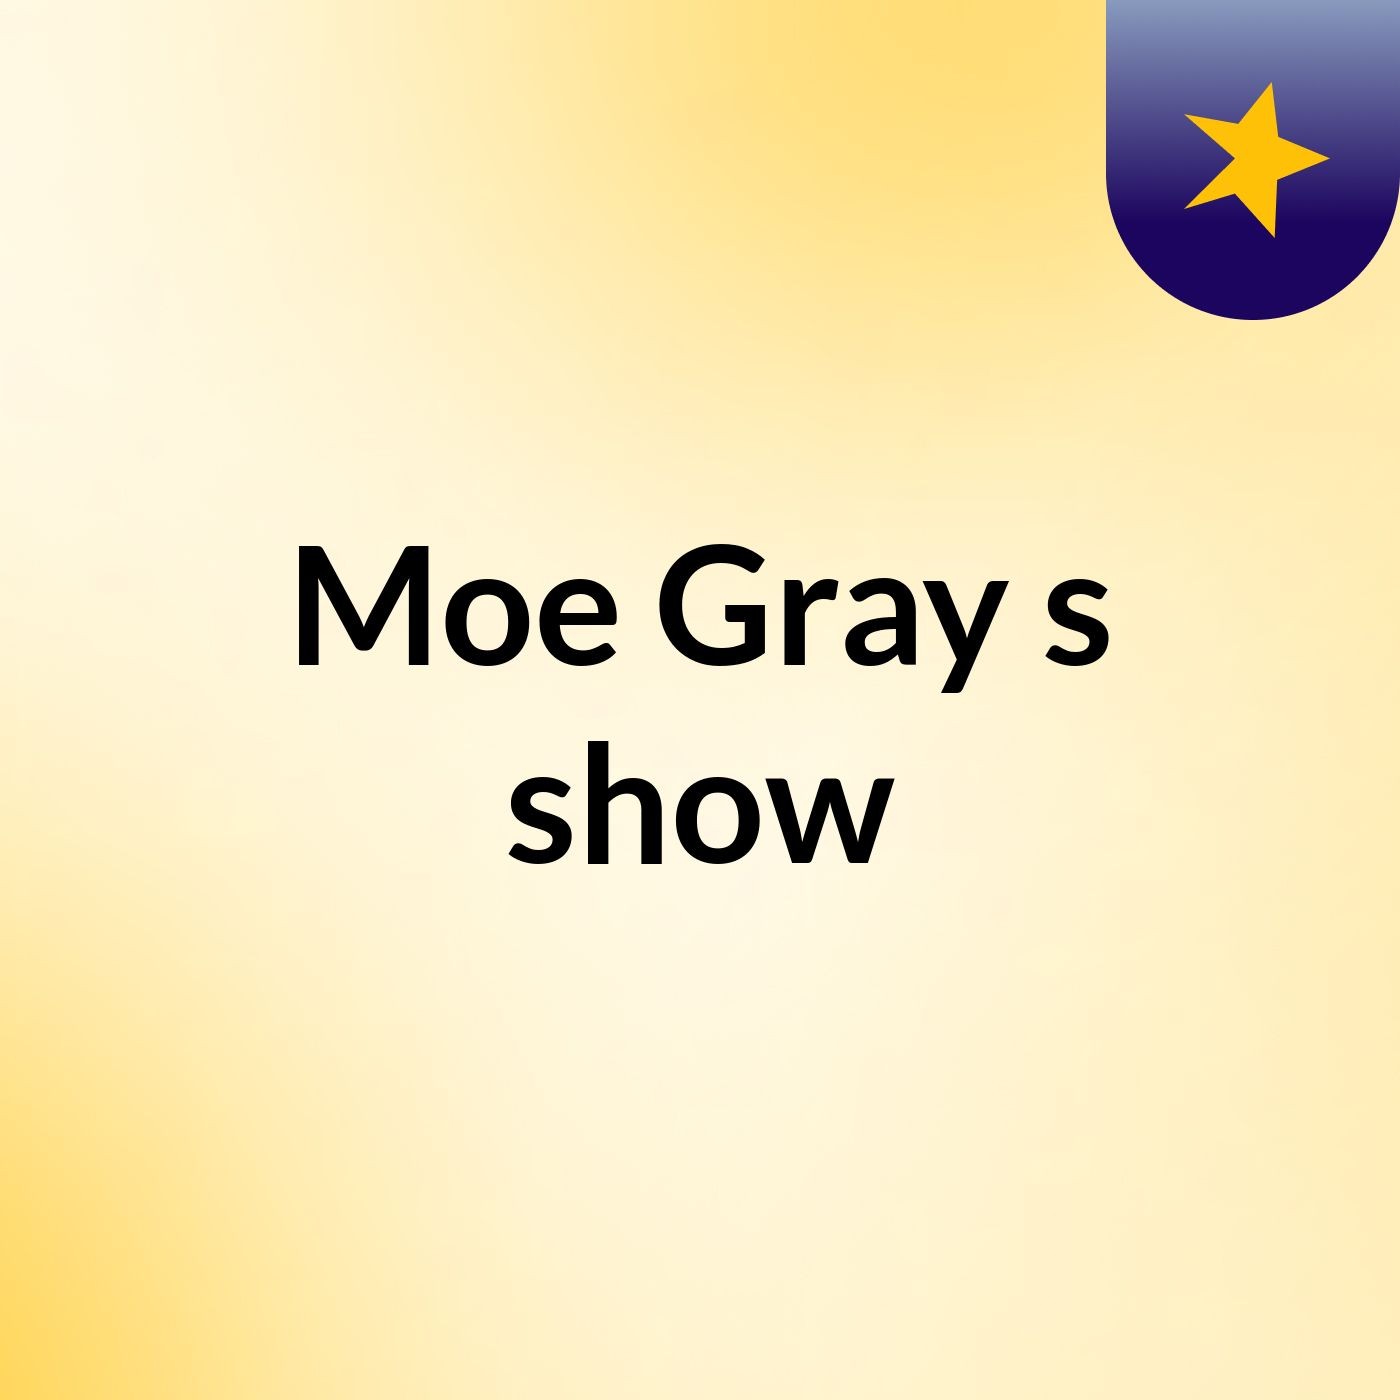 Moe Gray's show